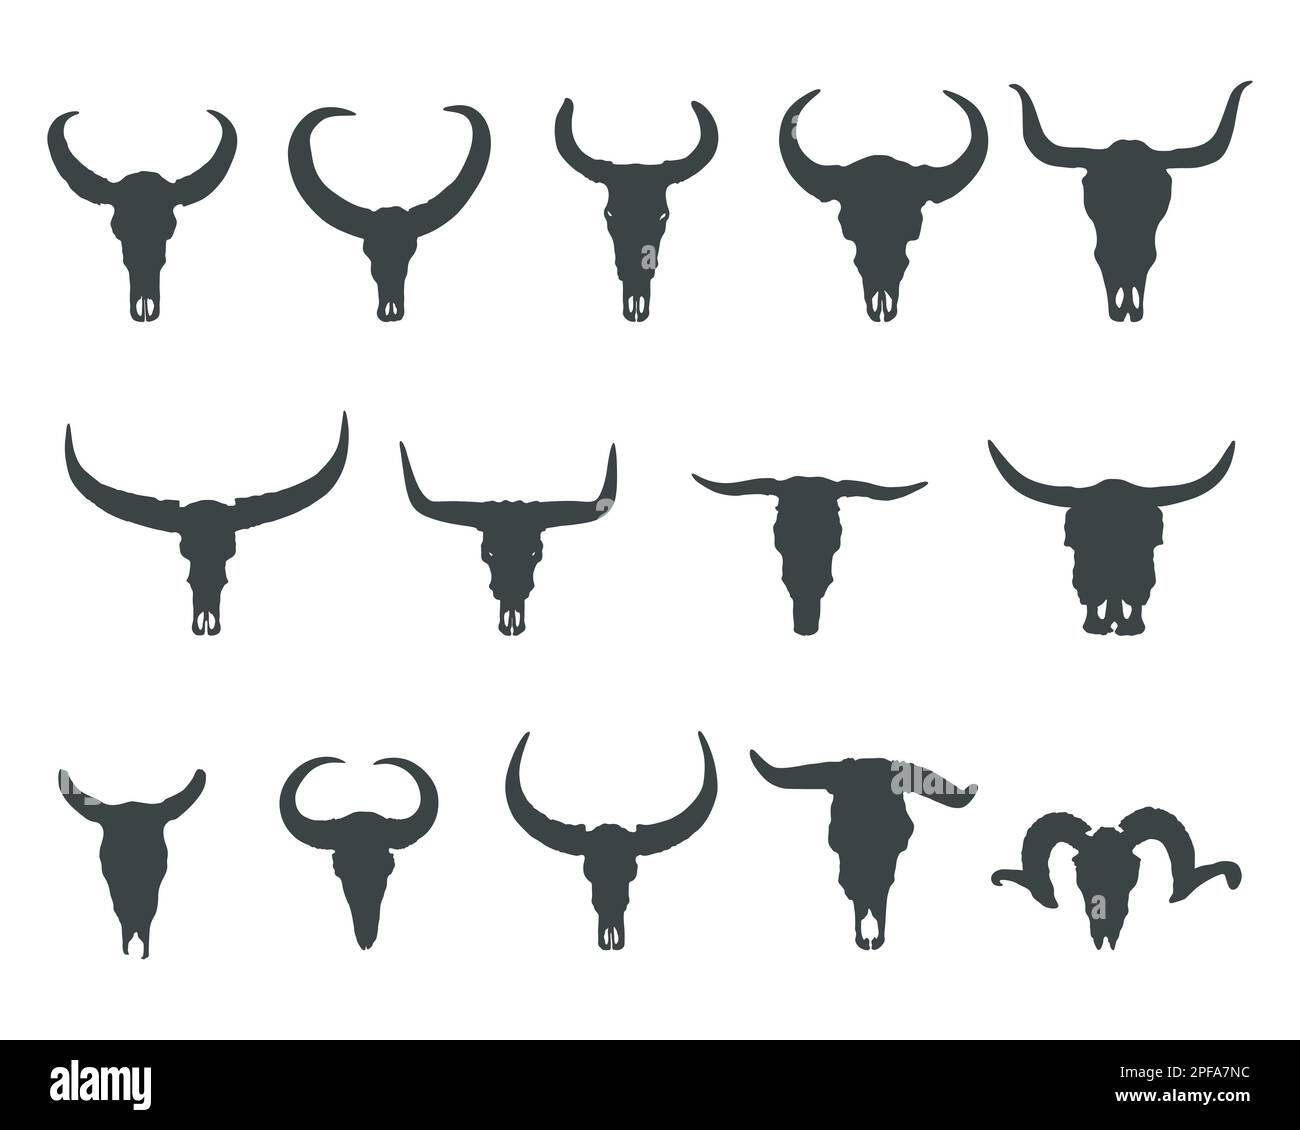 Silueta de toro de cráneo, siluetas de cráneo de búfalo, cuernos y silueta de cráneo, svg de cráneo de toro, silueta de calaveras de bisonte Ilustración del Vector